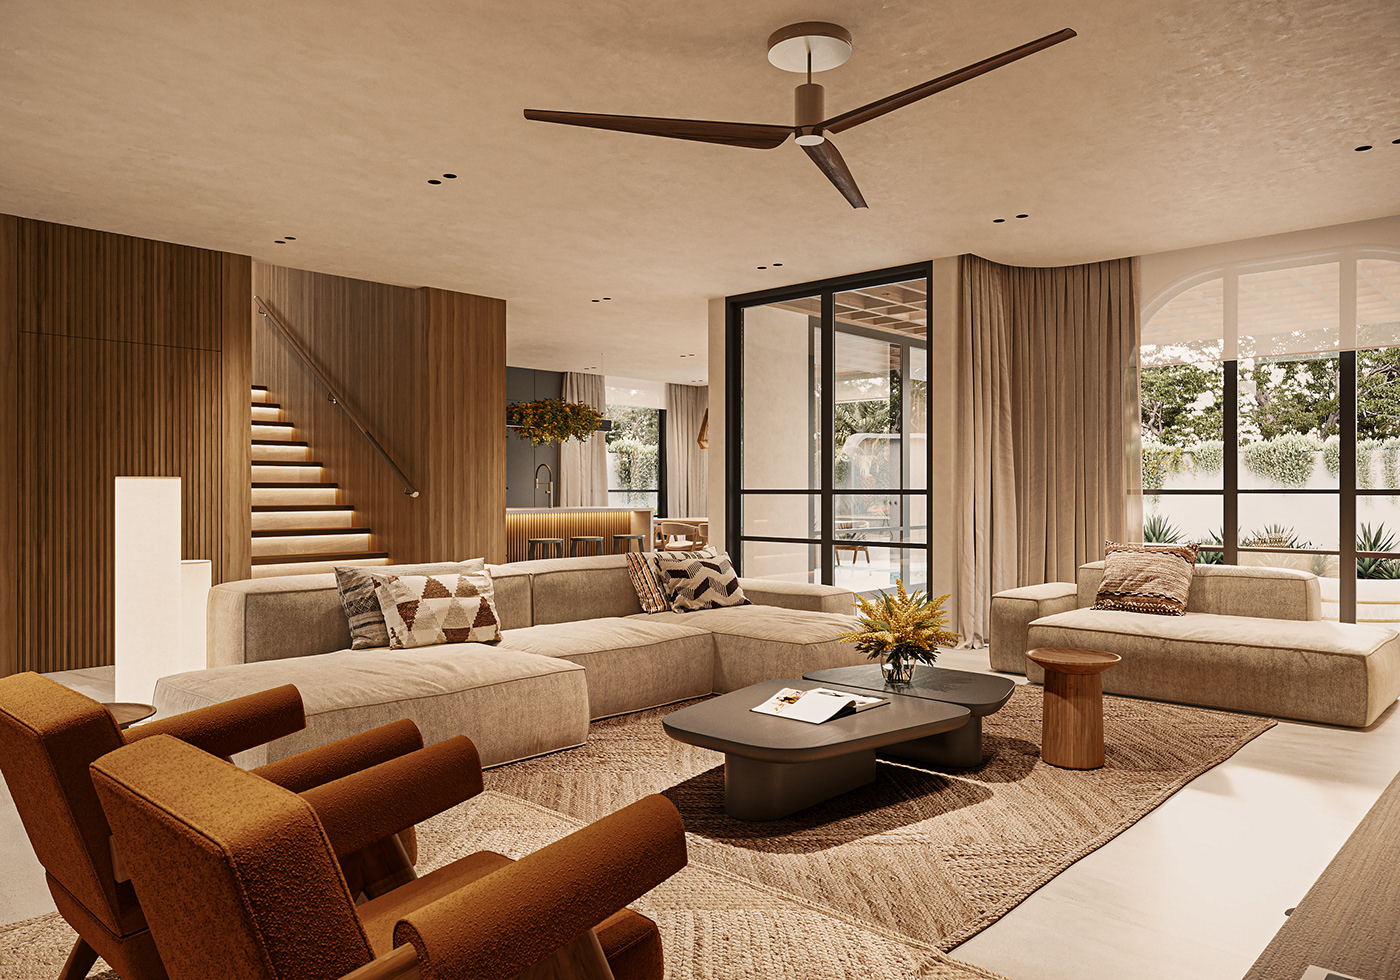 Villa architecture visualization interior design  modern archviz Render 3D exterior 3ds max